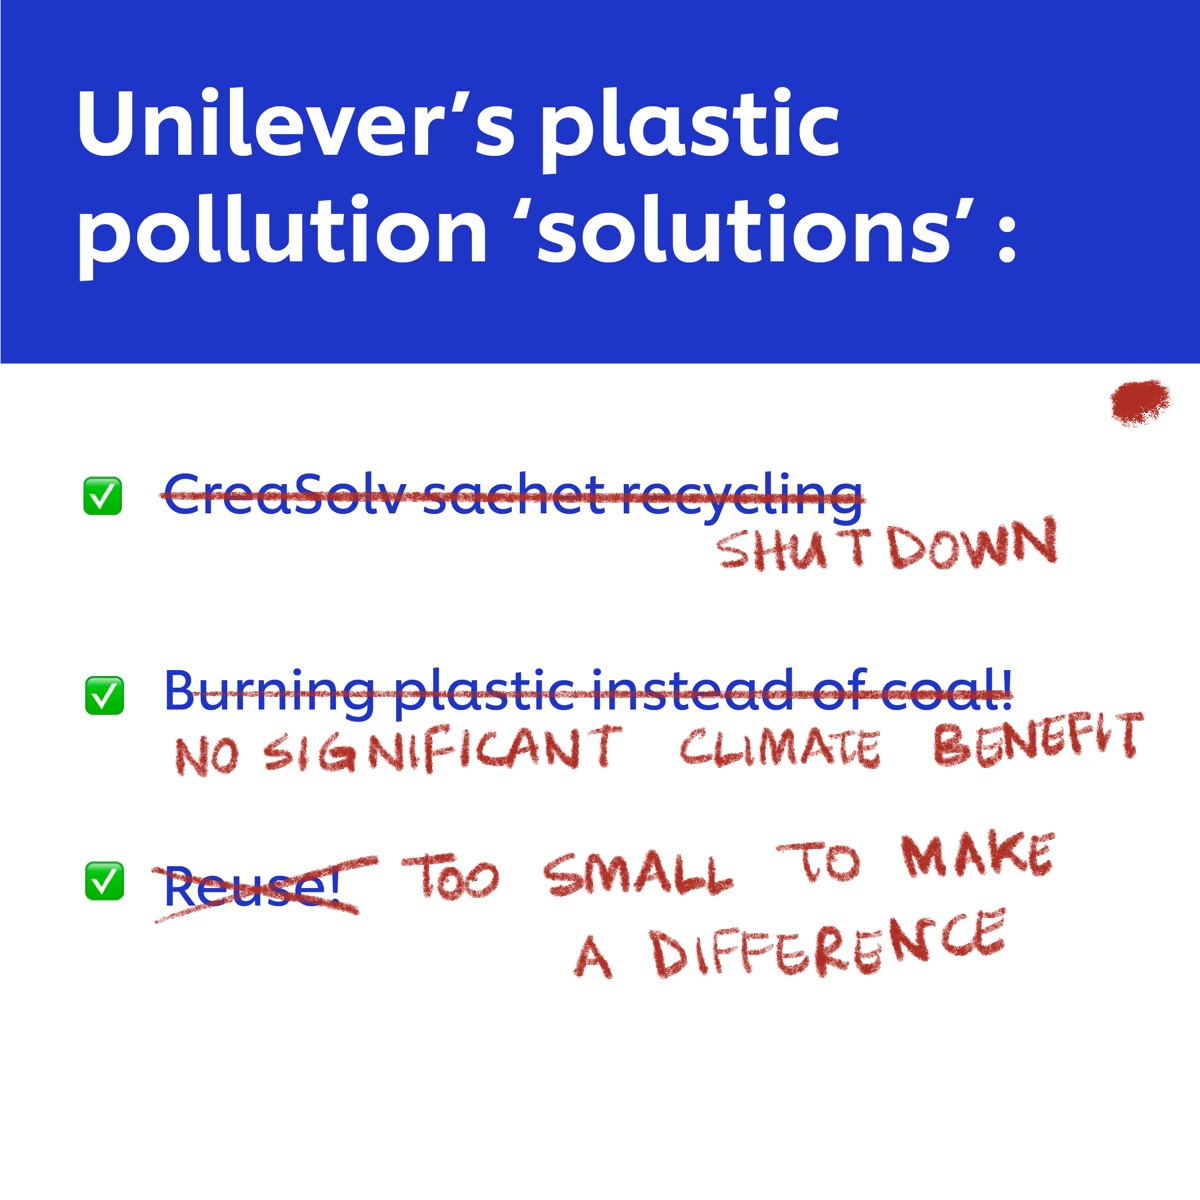 Akankah @UnileverIDN terus mengandalkan proses pengelolaan sampah yang tidak efektif? Atau akankah @UnileverIDN akhirnya menjadi pelopor kemitmen keberlanjutan dan berhenti dari saset? #QuitSachets @Unilever #plasticfree #ZeroWaste #PlasticPollution